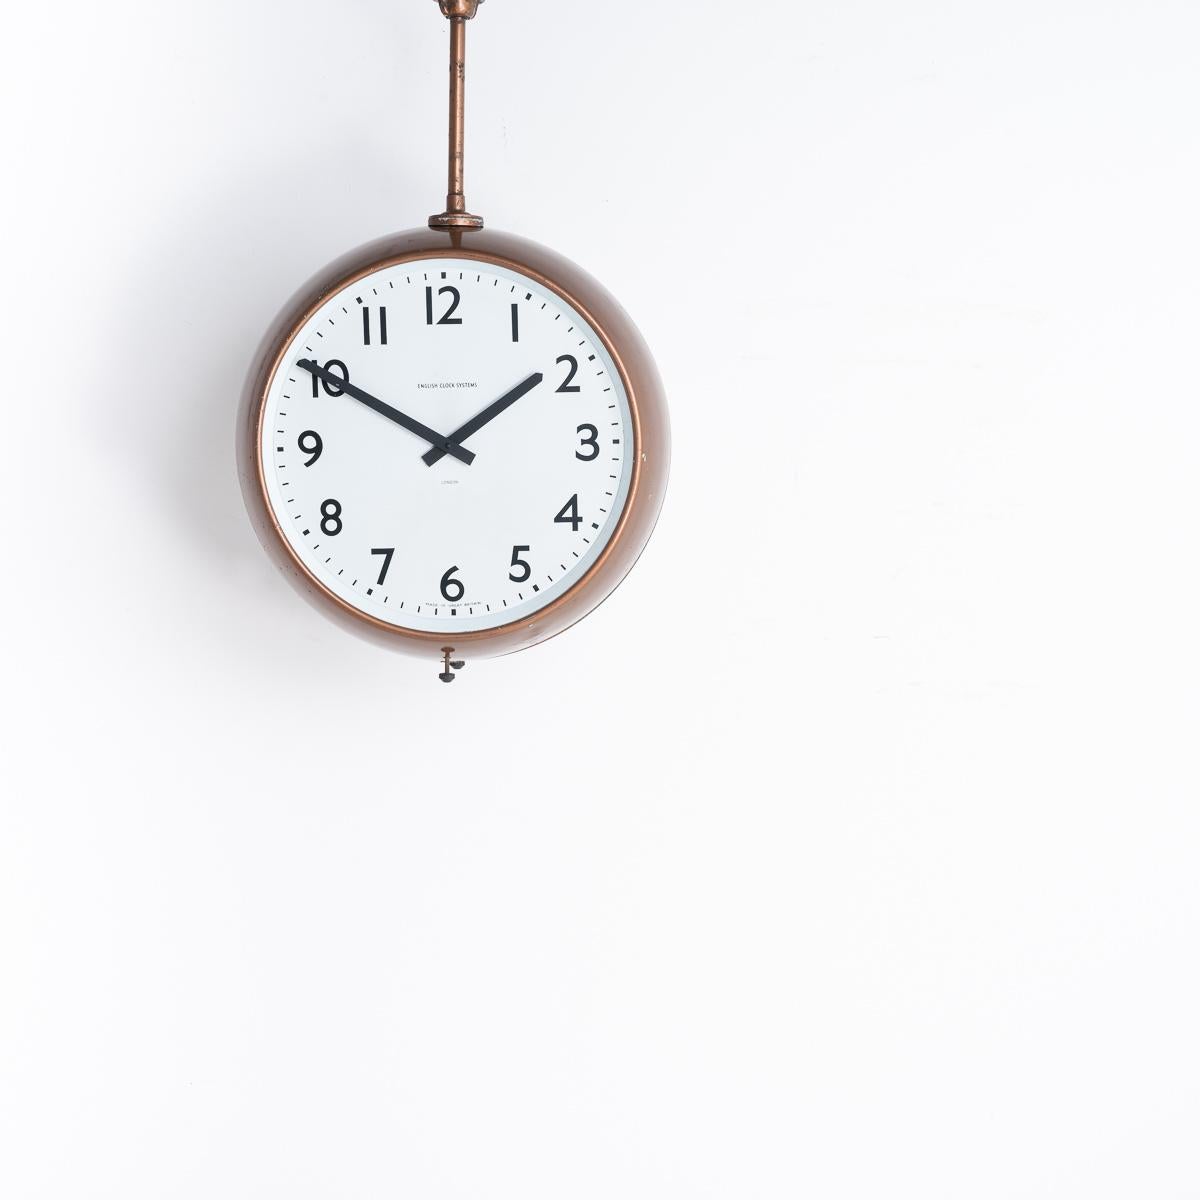 HORLOGE D'USINE DOUBLE FACE RÉCUPÉRÉE

Une horloge d'usine originale à double face récupérée de la cidrerie Westons dans le Herefordshire.

Fabriqué par English Clock Systems Ltd à Londres, Angleterre, vers 1960.

La peinture d'origine